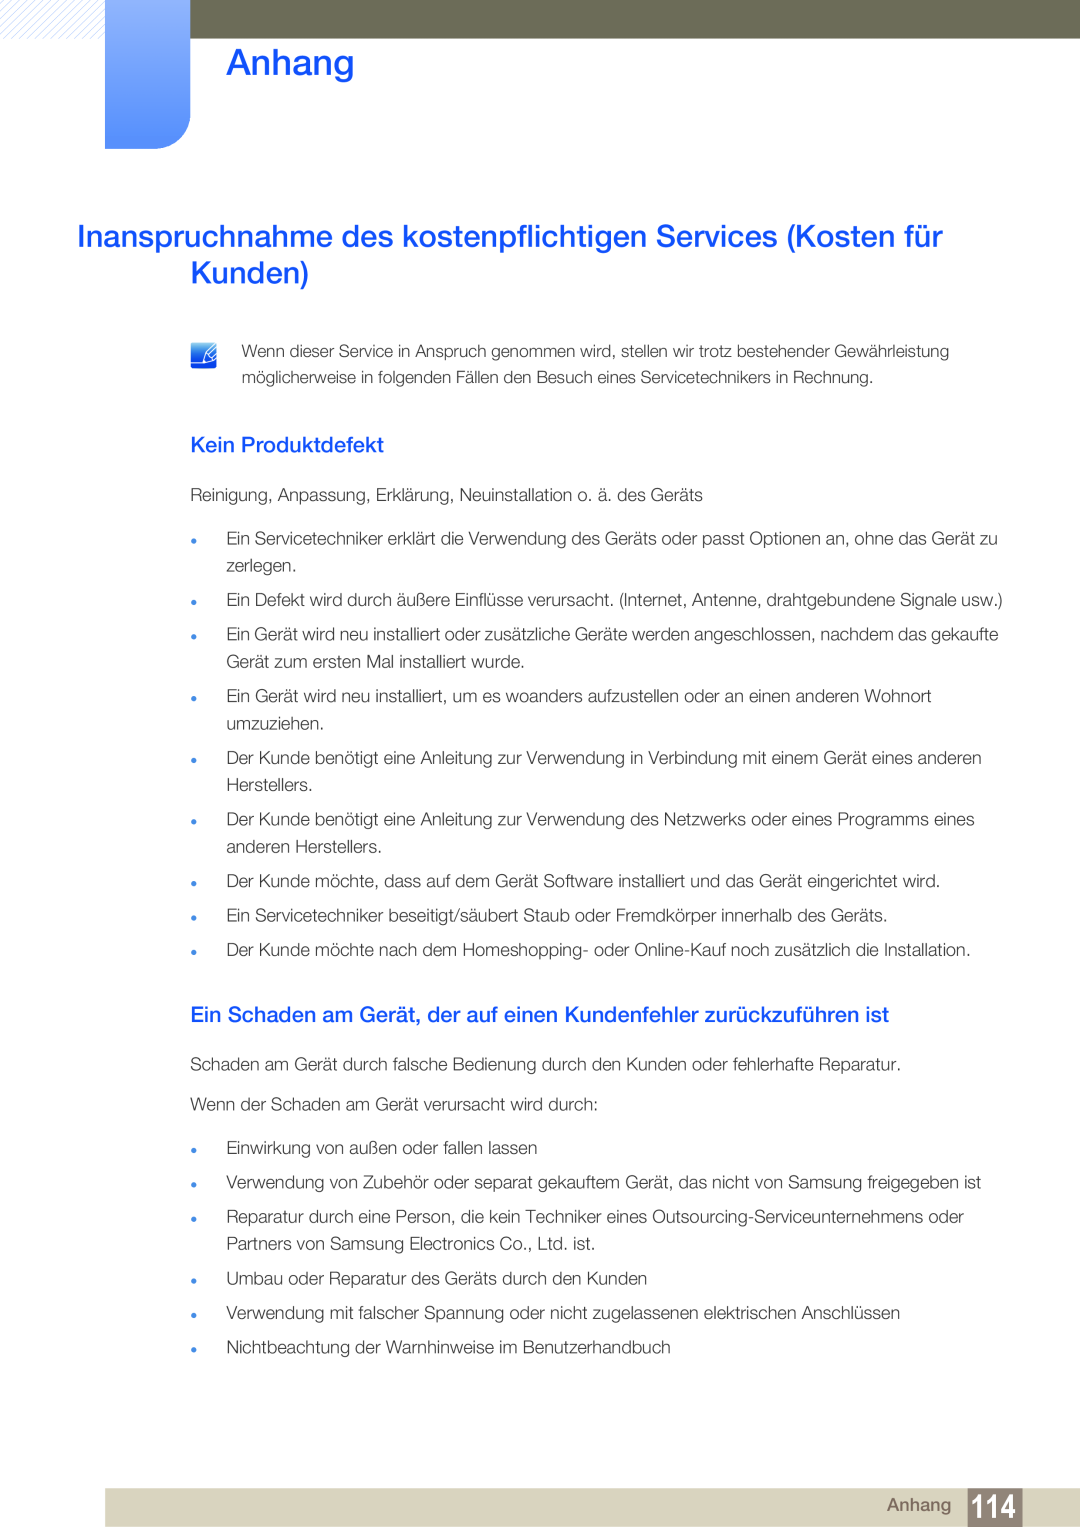 Samsung LS23E65UDS/EN manual Anhang, Inanspruchnahme des kostenpflichtigen Services Kosten für Kunden, Kein Produktdefekt 